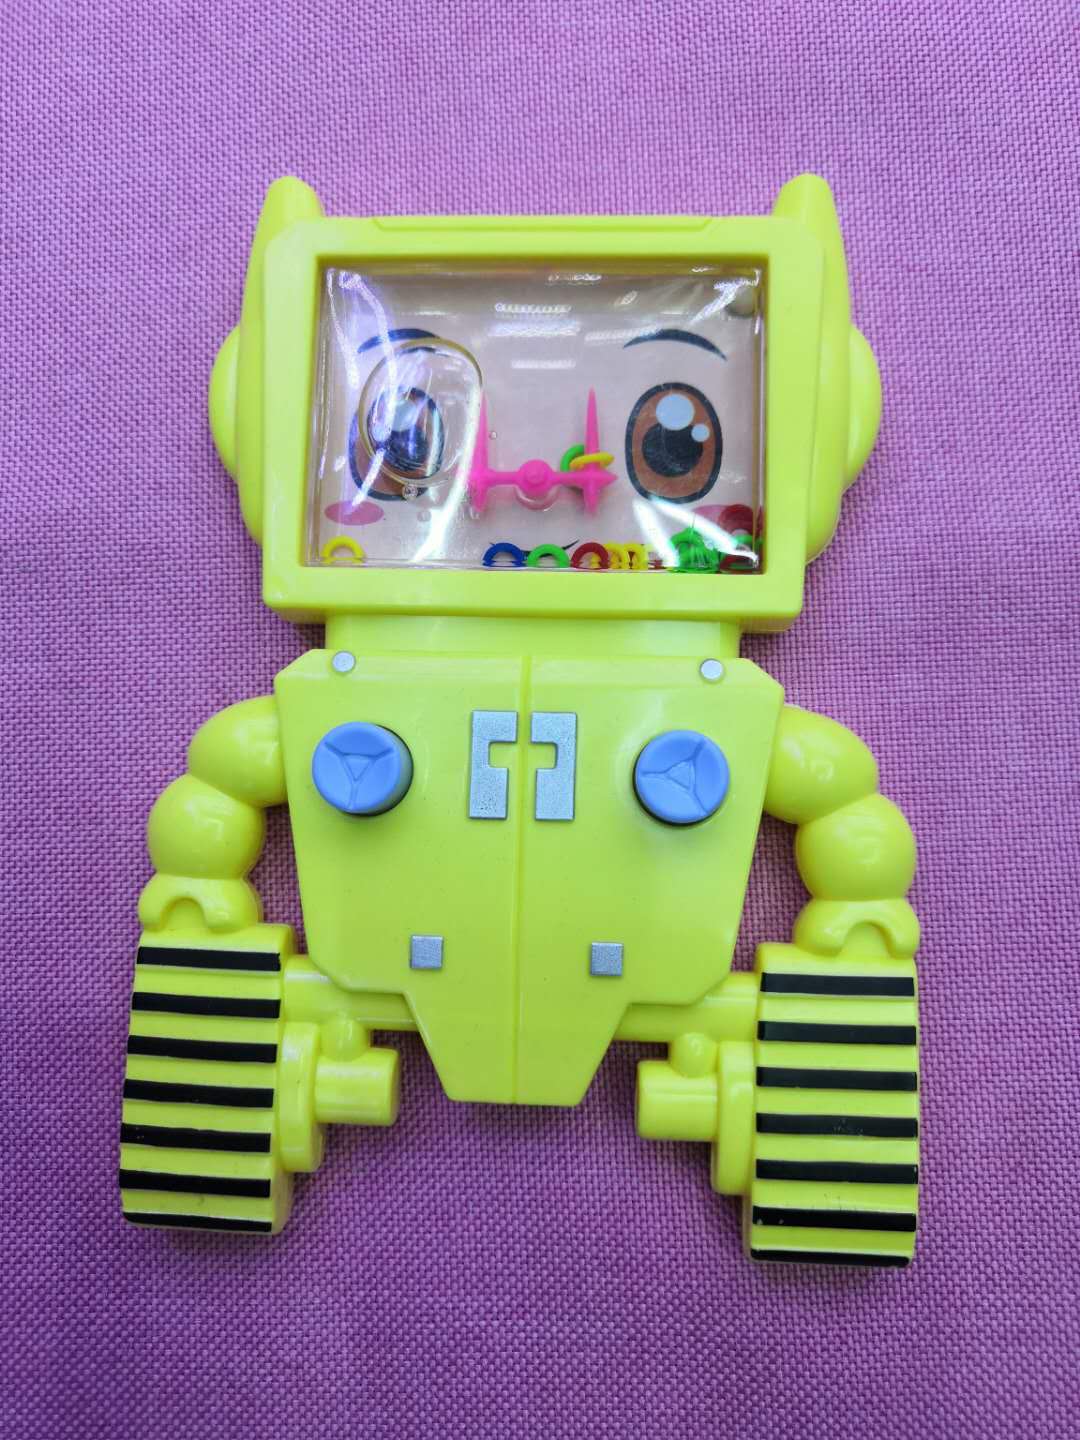 机器人卡通水机游戏机玩具创意玩具怀旧玩具批发图